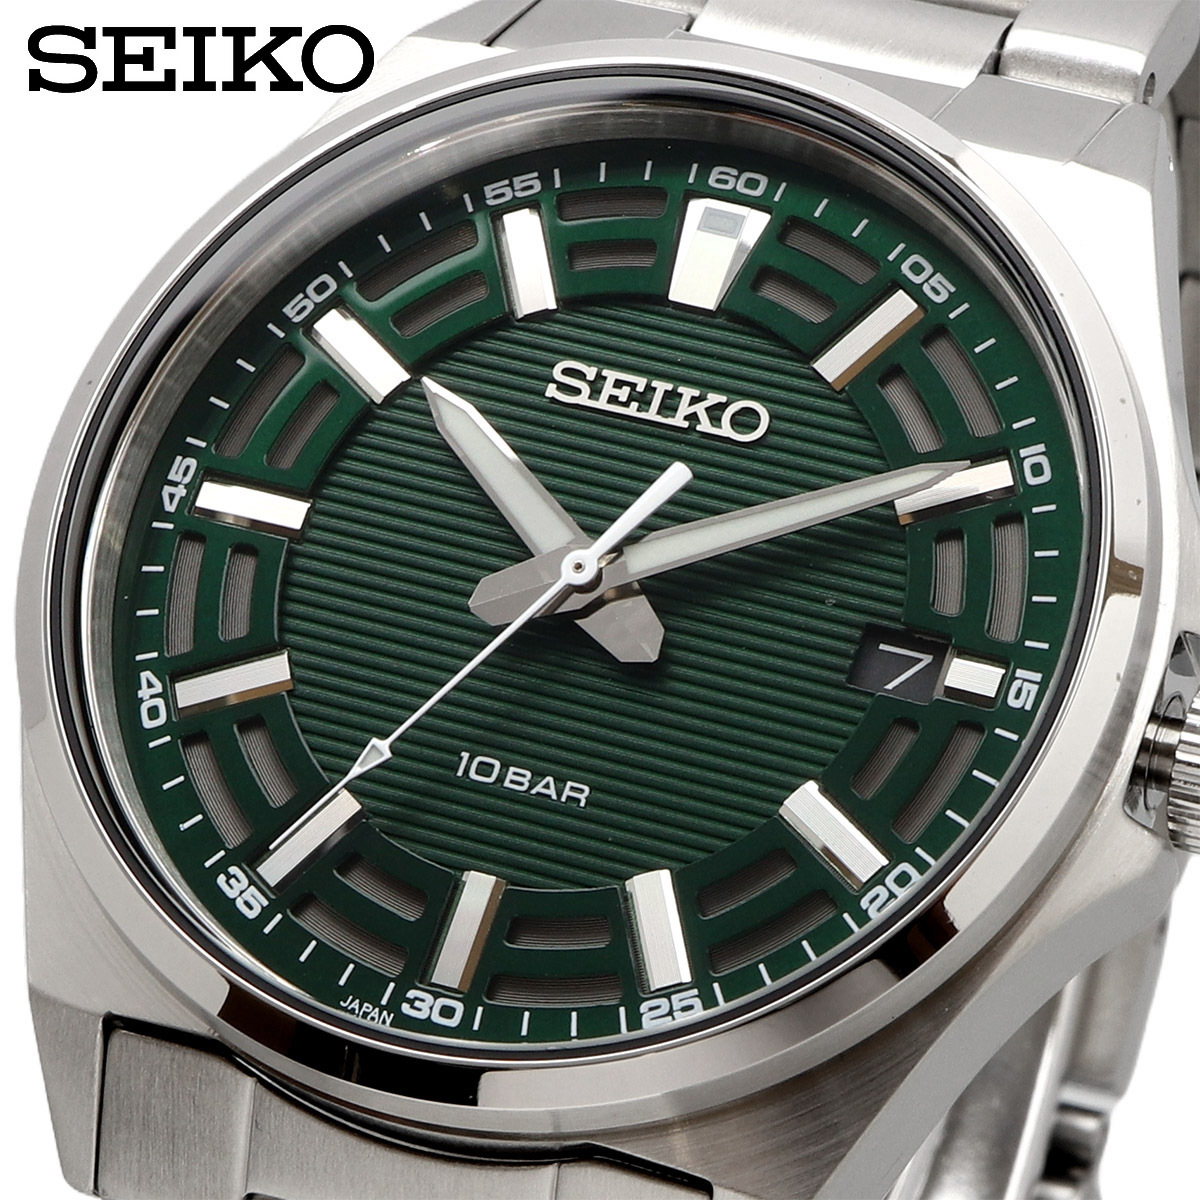 SEIKO セイコー 腕時計 メンズ 海外モデル クォーツ MADE IN JAPAN 日本製 ビジネス カジュアル シンプル SUR503